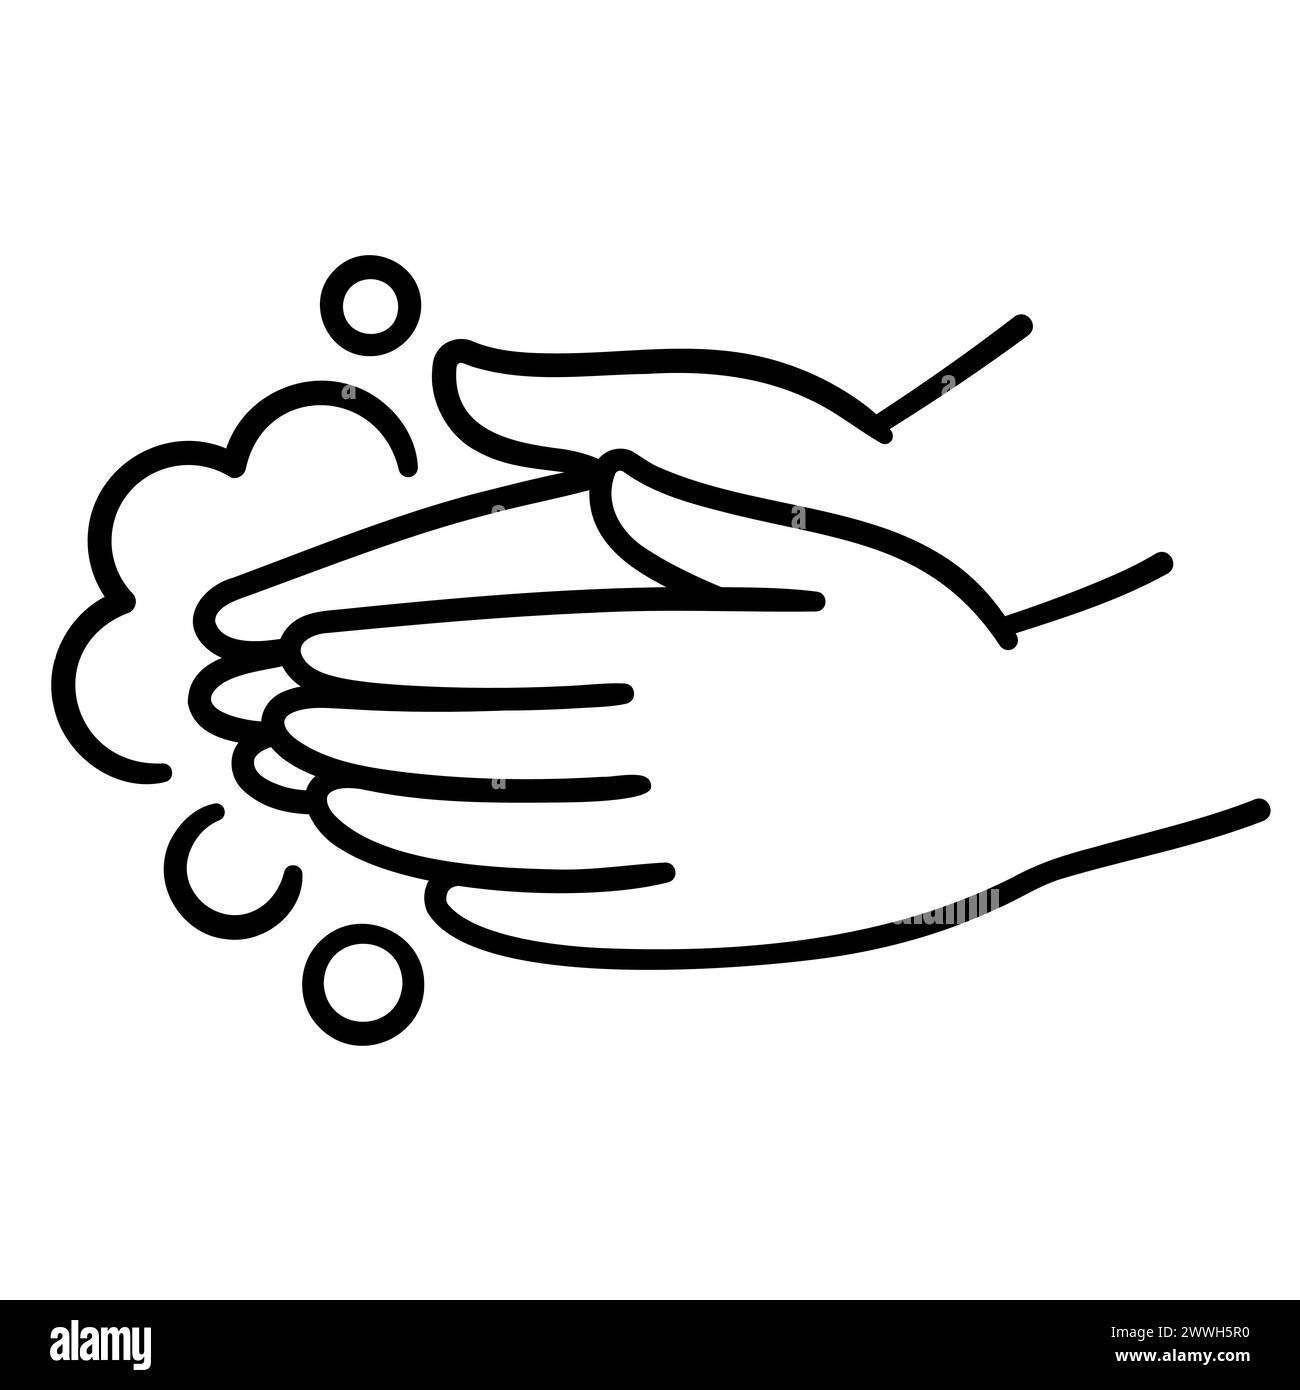 Icône de lavage à la main, dessin à la main noir et blanc dessin à la main art doodle. Deux mains avec de la mousse de savon. Illustration clip art simple, dessin vectoriel. Illustration de Vecteur